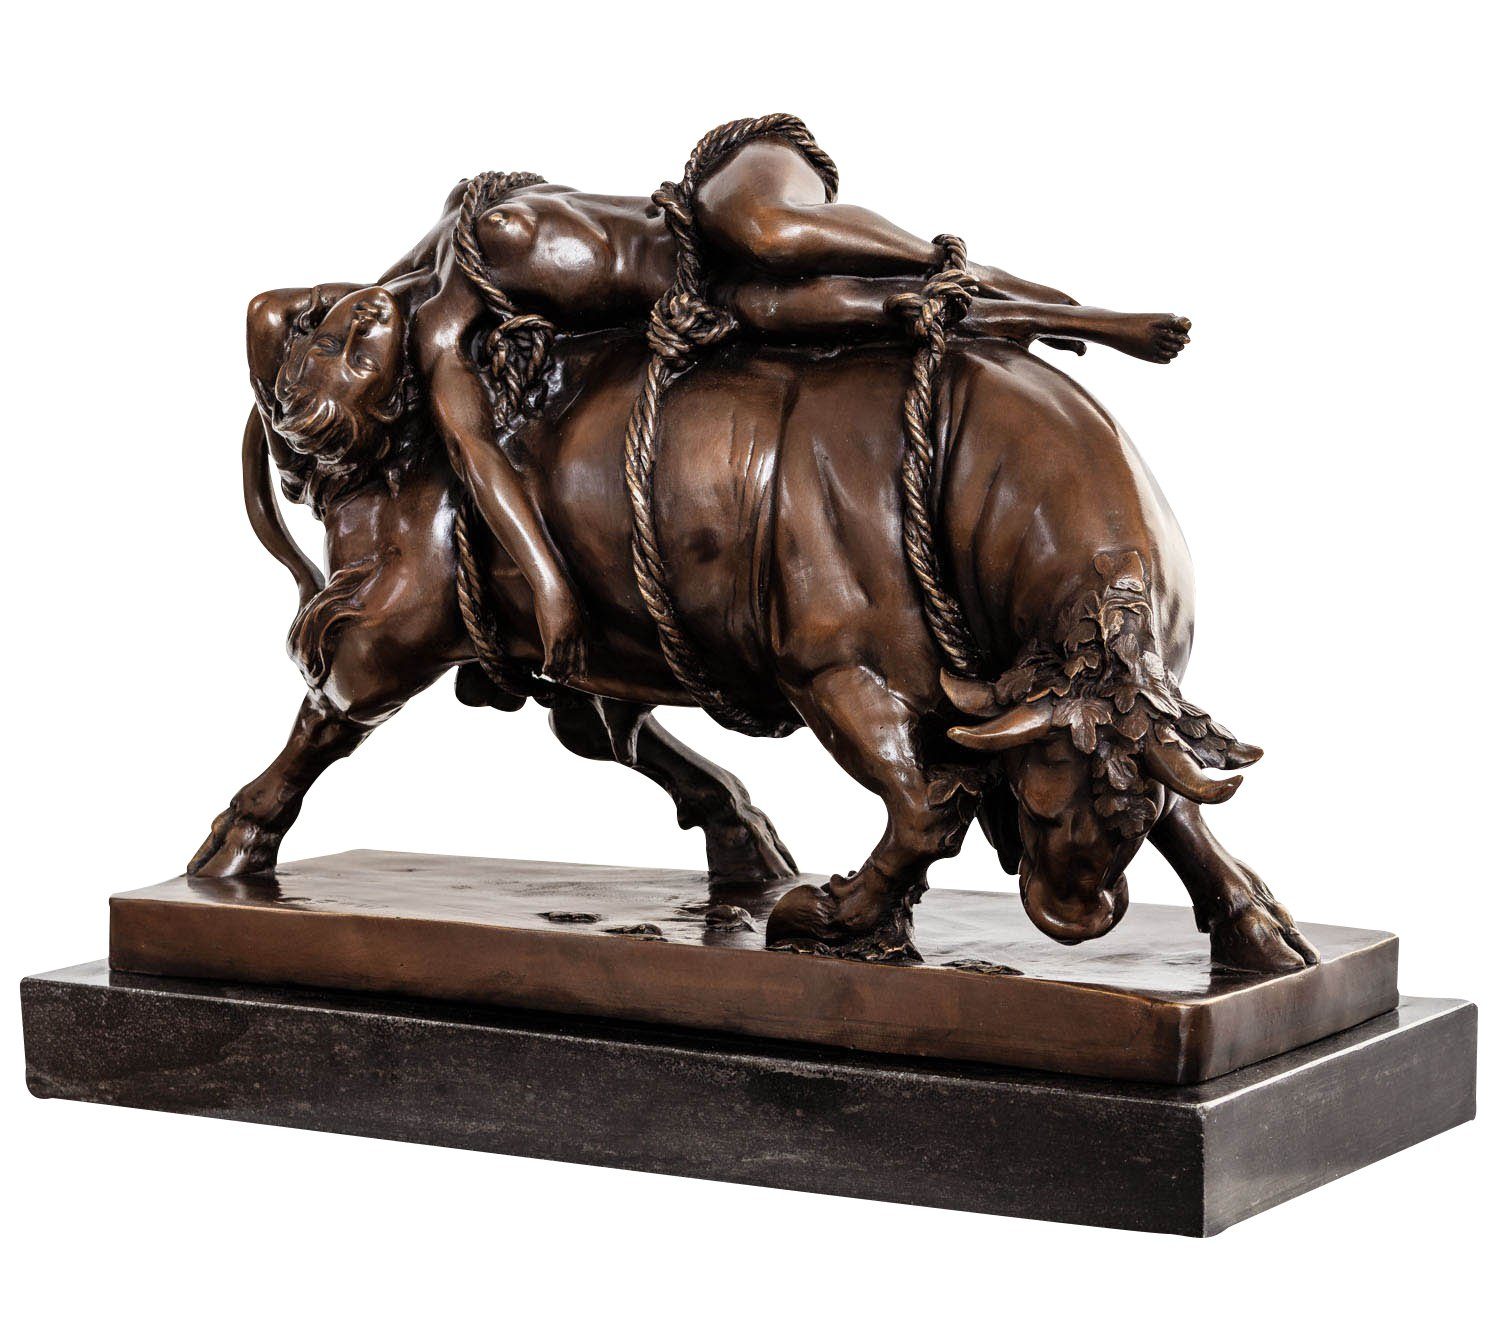 Aubaho Skulptur Bronzeskulptur Europa Stil nach Bronze Debut Skulpt Stier Figur Marcel